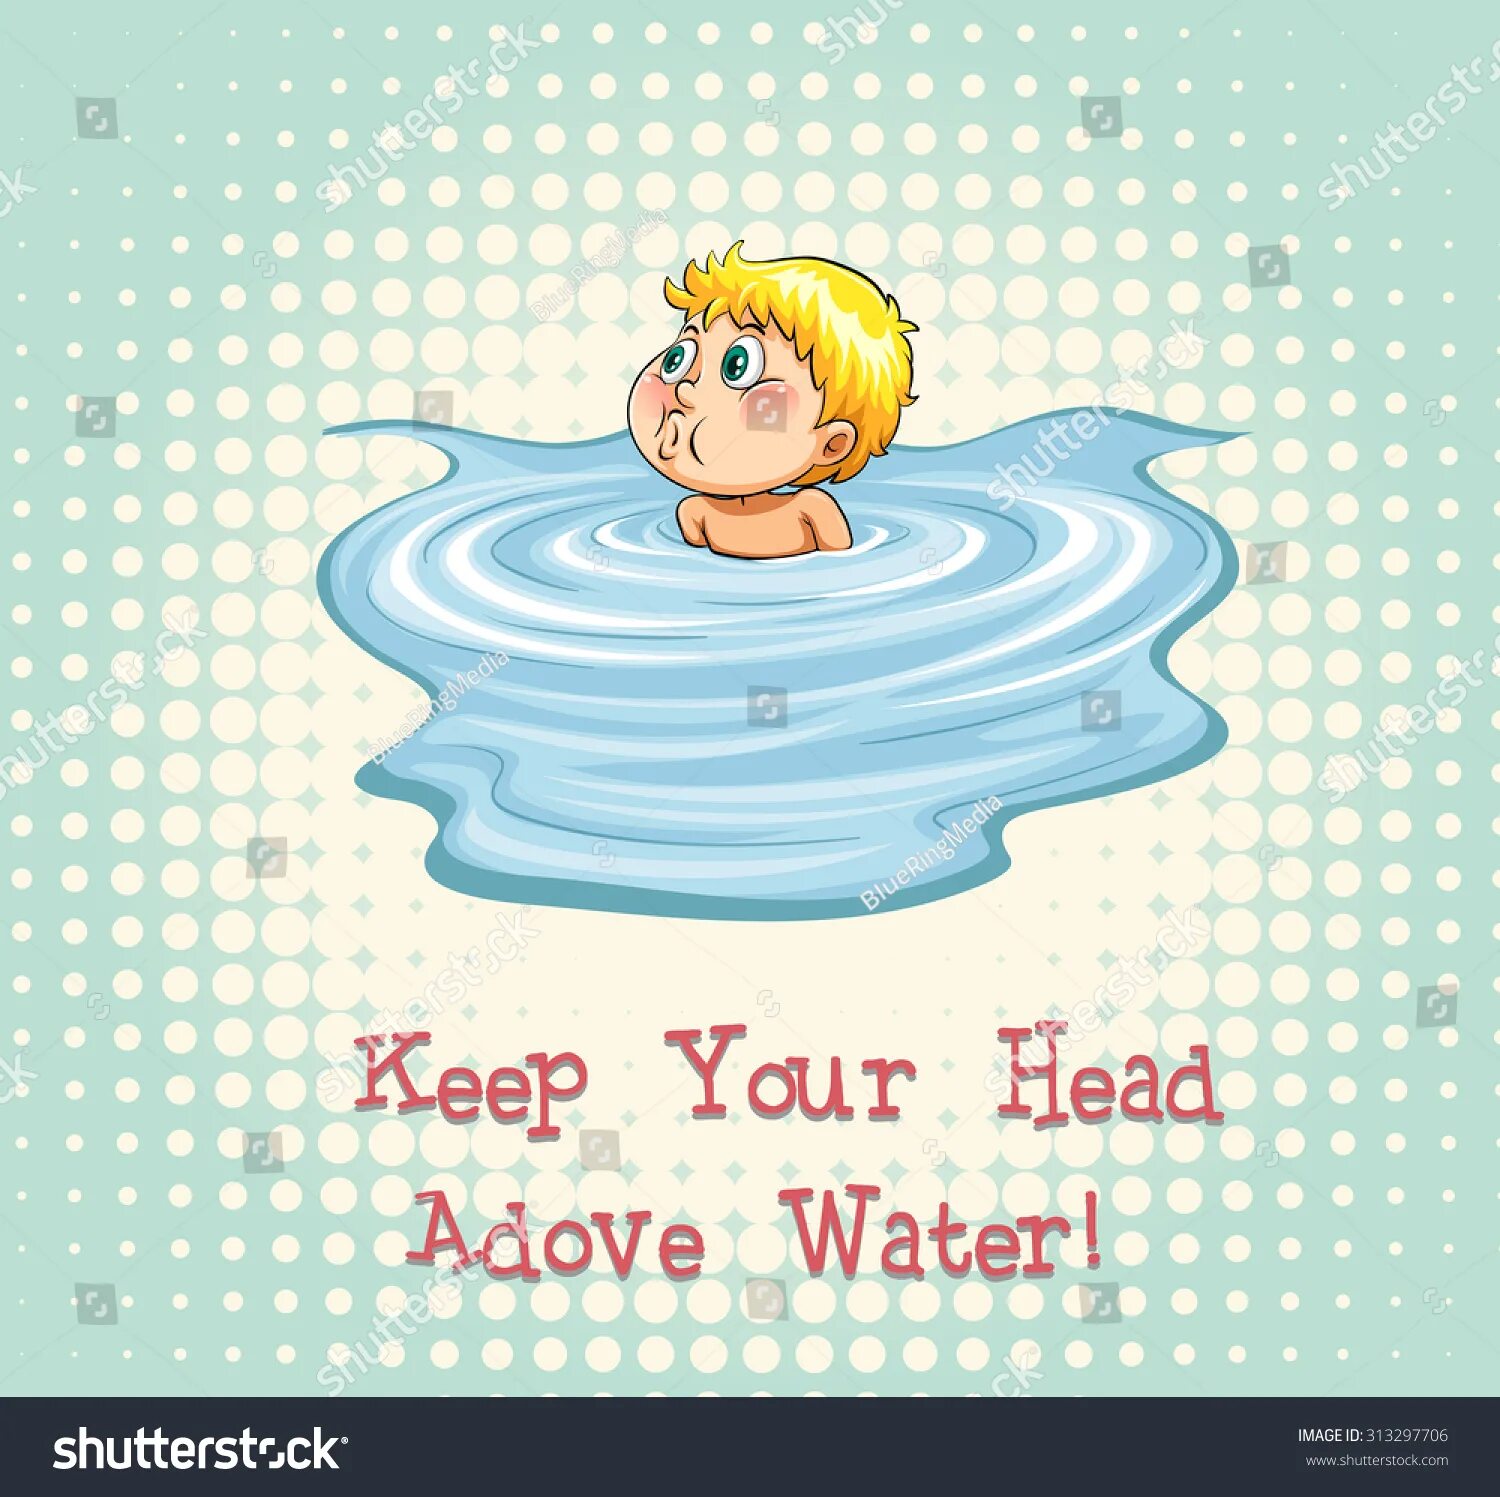 Keep ones head. Keep head above Water. Keep your head. Идиома to keep your head. To keep one's head above Water идиома.